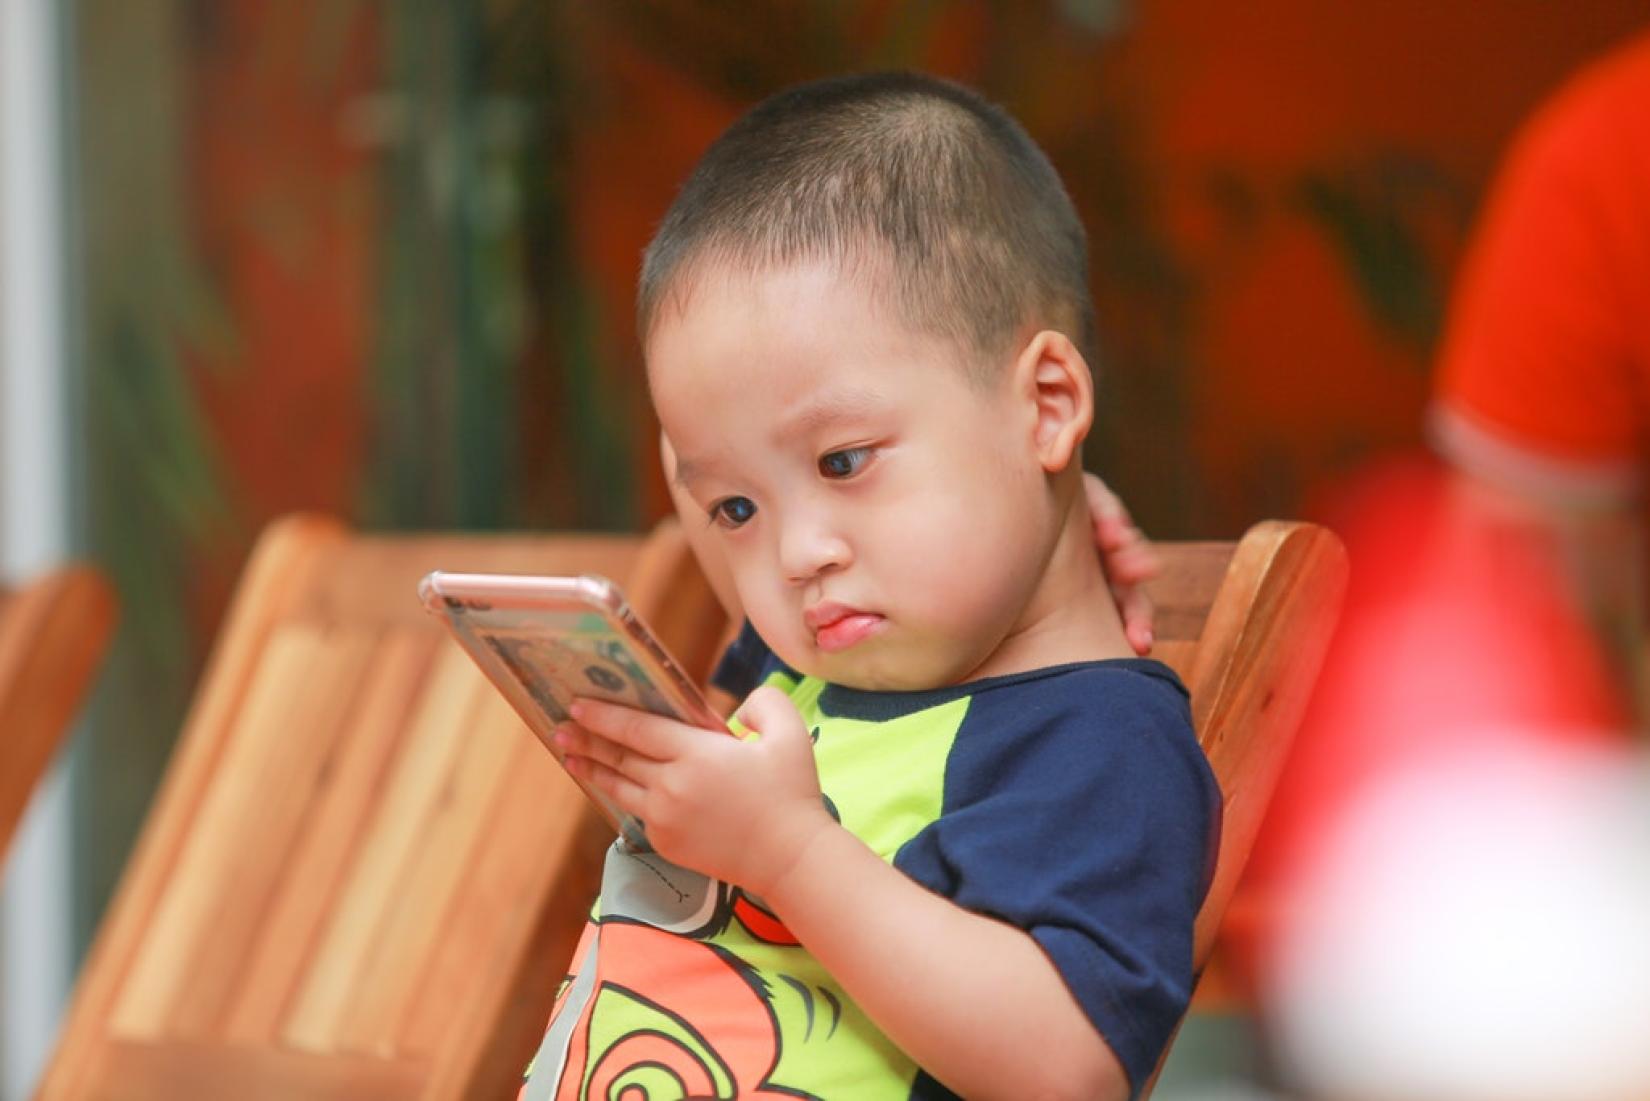 OMS quer que crianças passem menos tempo diante de telas eletrônicas e mais tempo em atividades físicas. Foto: PEXELS (CC)/Kaku Nguyen